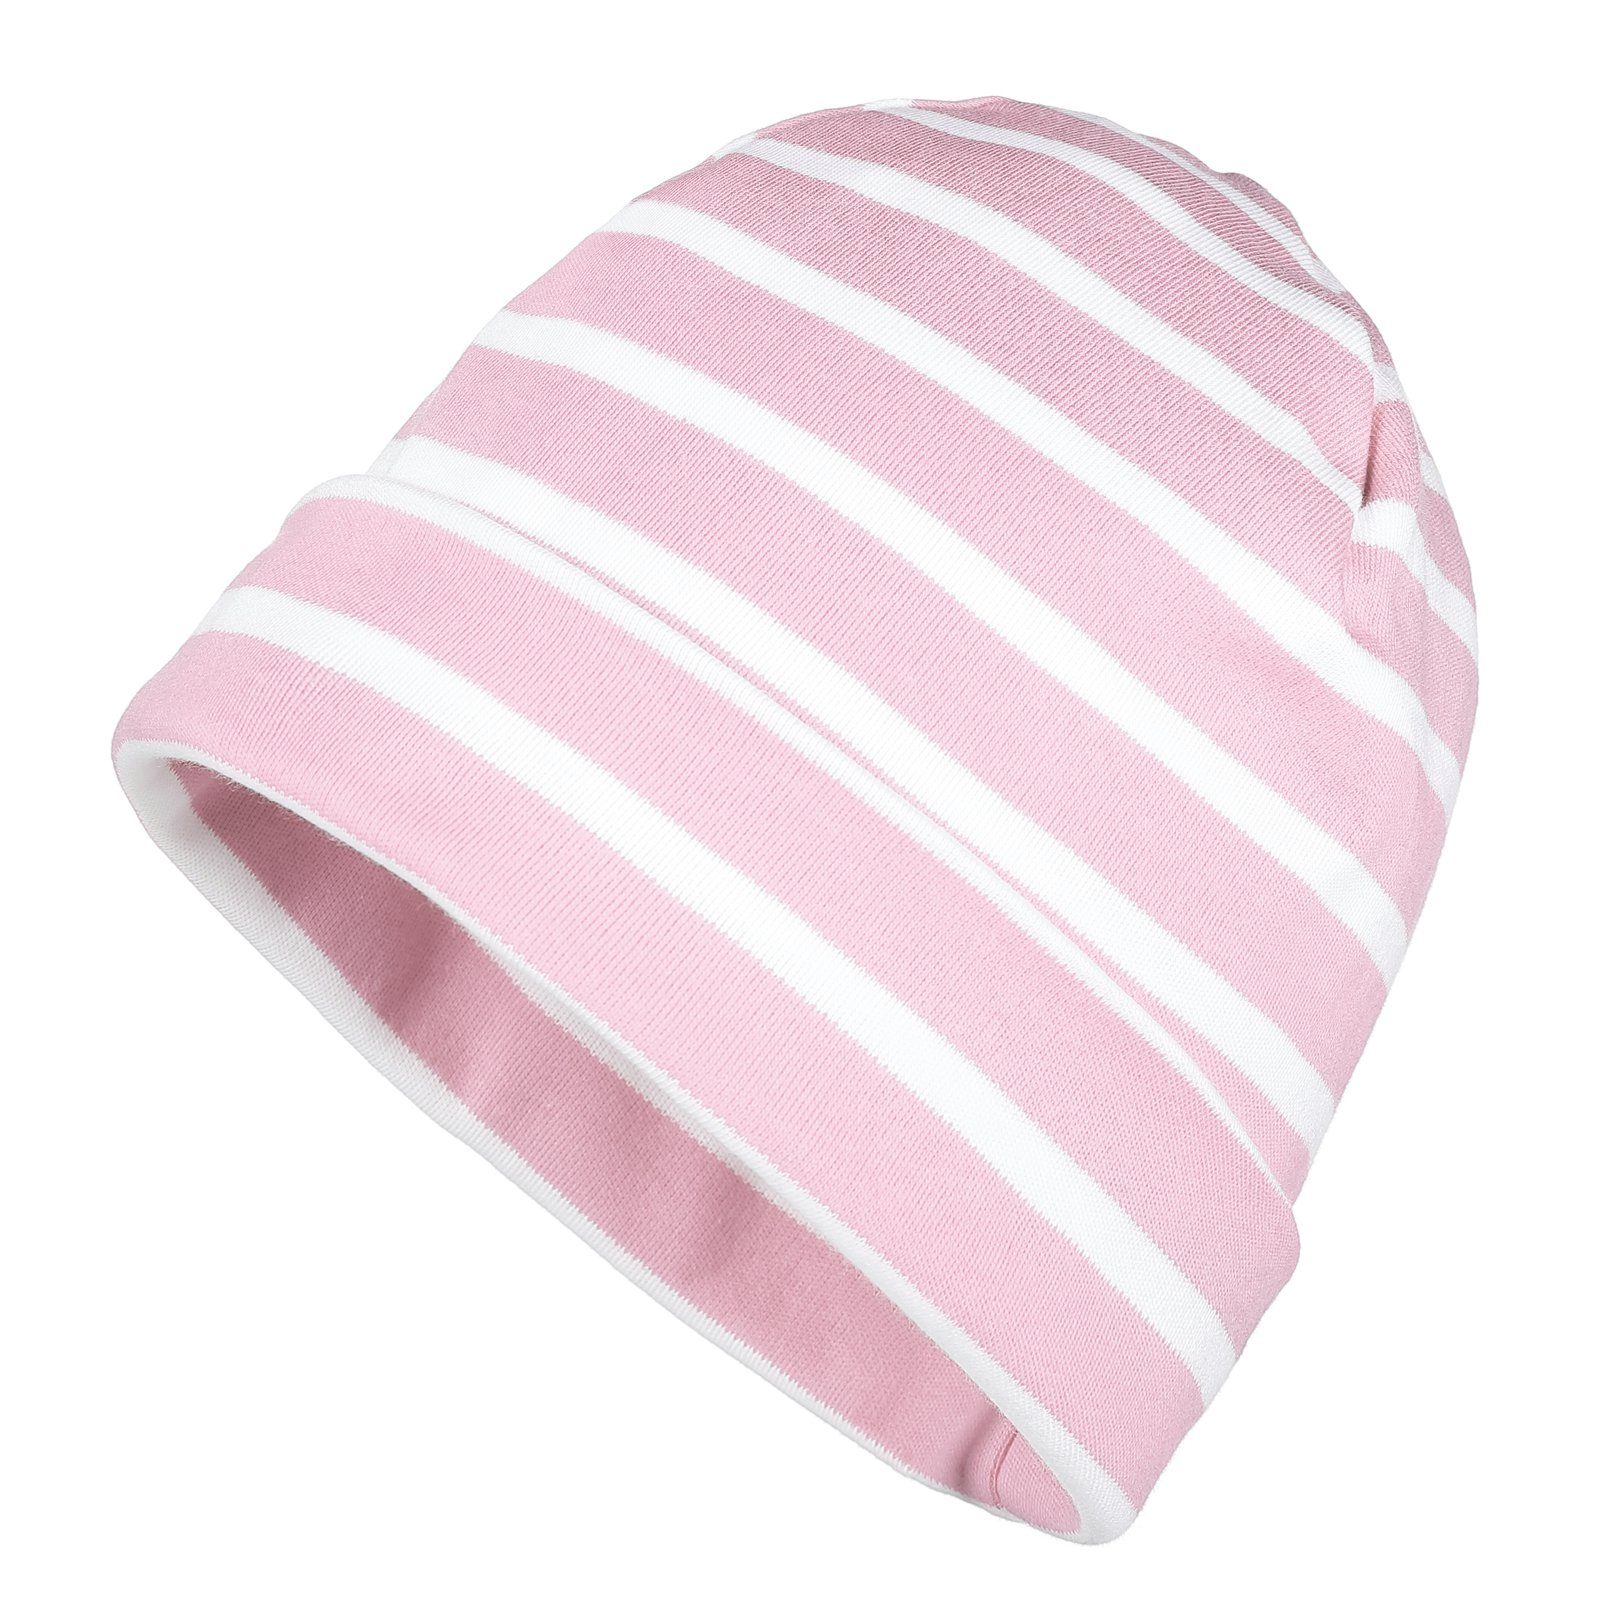 modAS Strickmütze Unisex Mütze Streifen für Kinder & Erwachsene - Ringelmütze Baumwolle (14) rosa / weiß